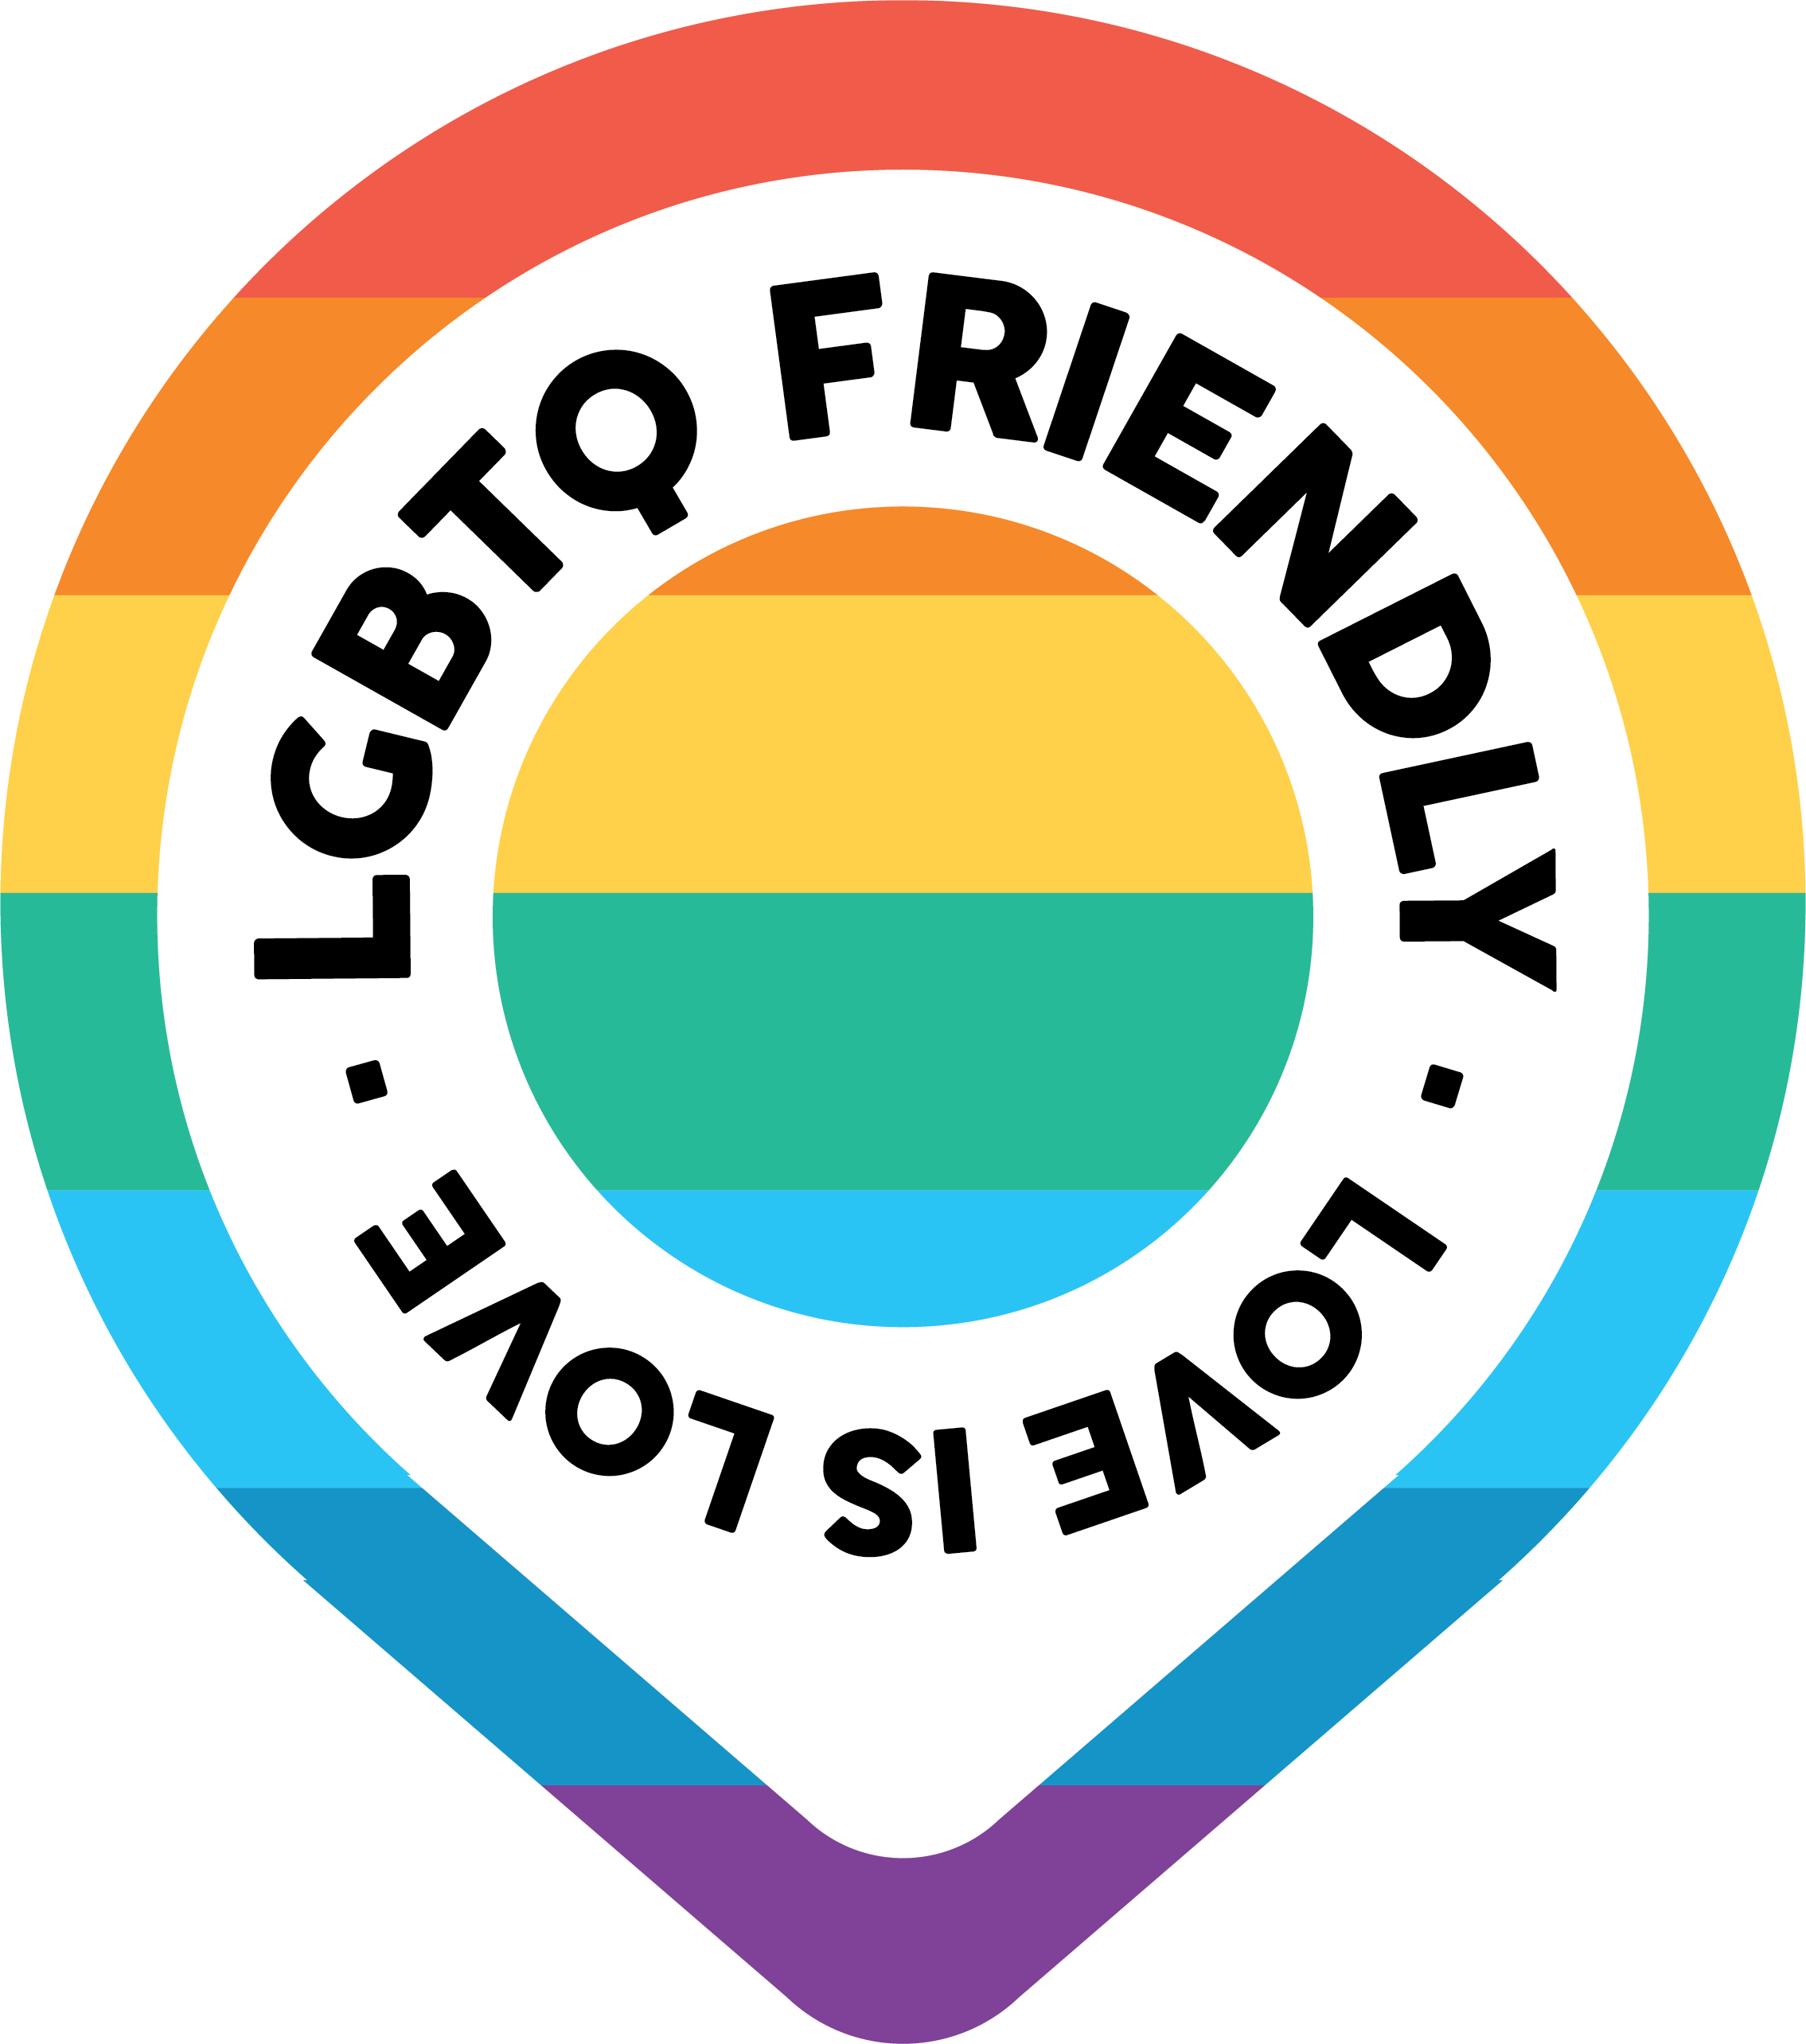 LGBTQ Friendly logo